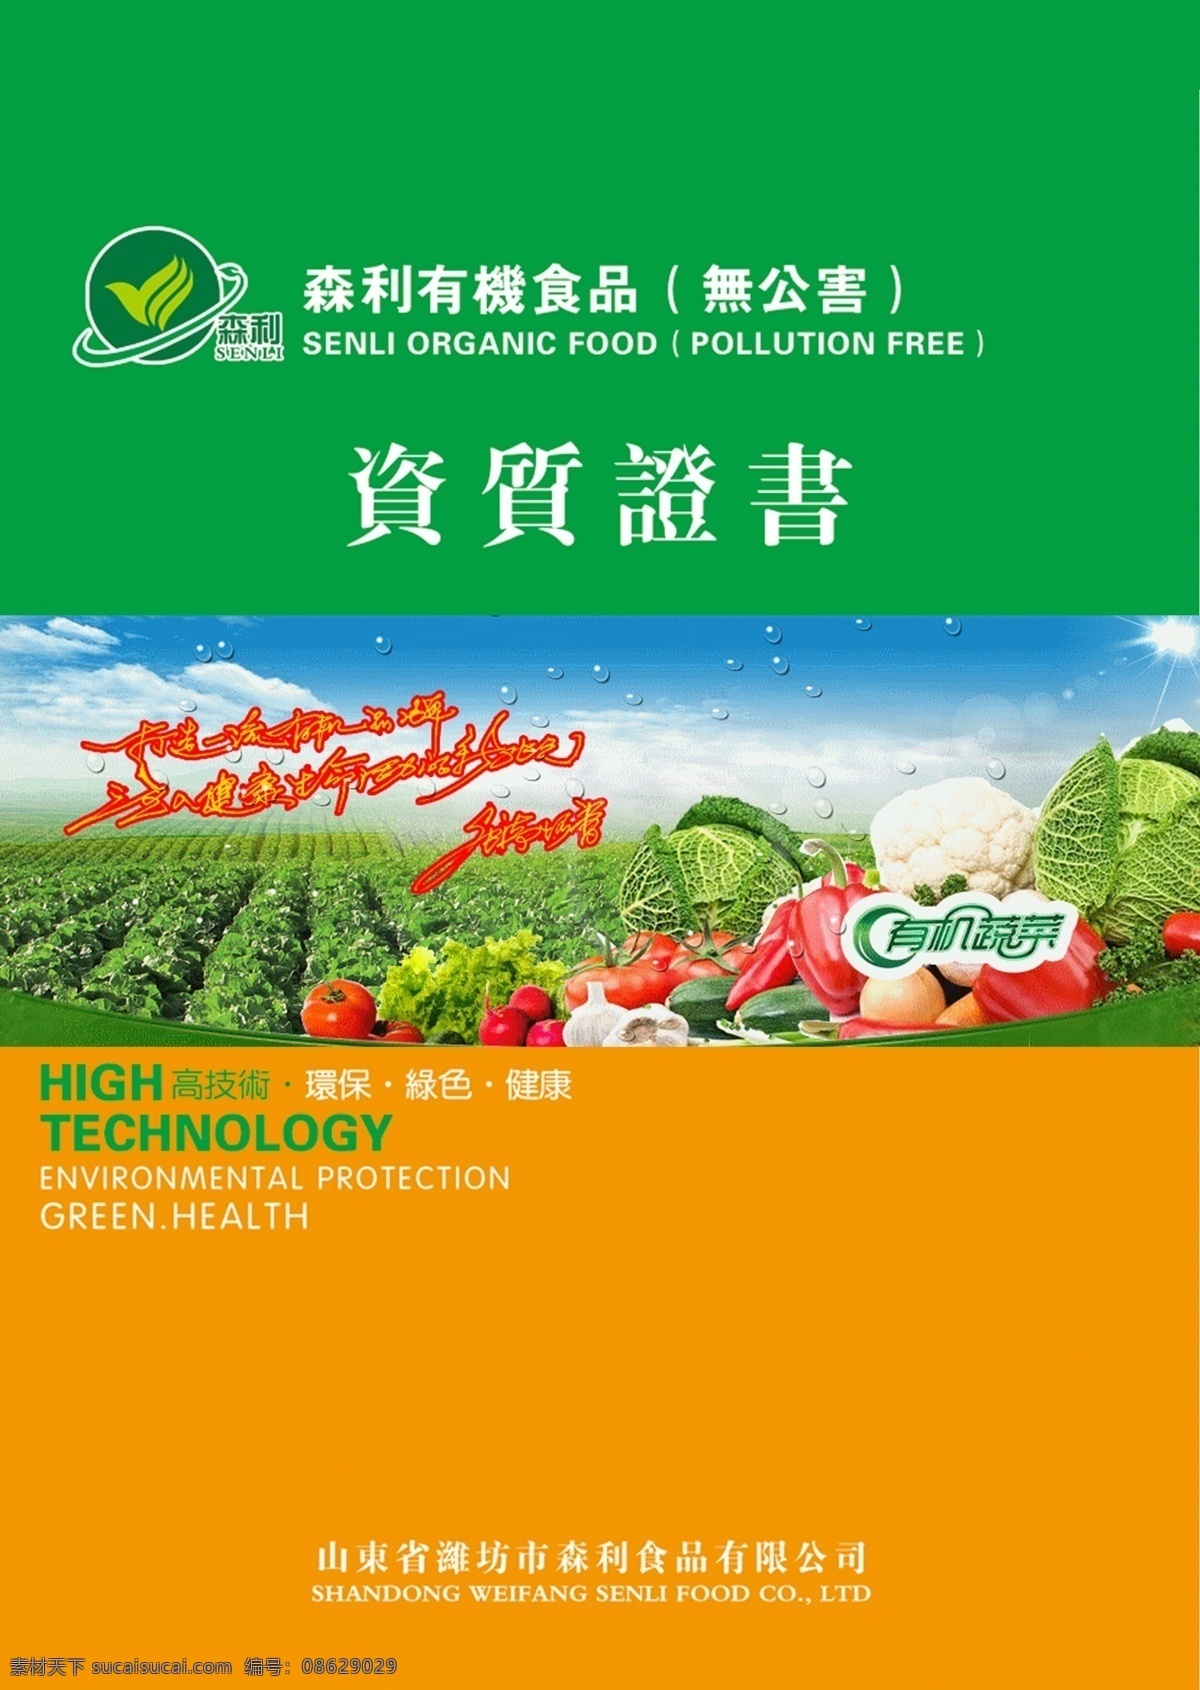 企业免费下载 广告设计模板 画册设计 绿色 企业 食品 蔬菜 宣传册 源文件